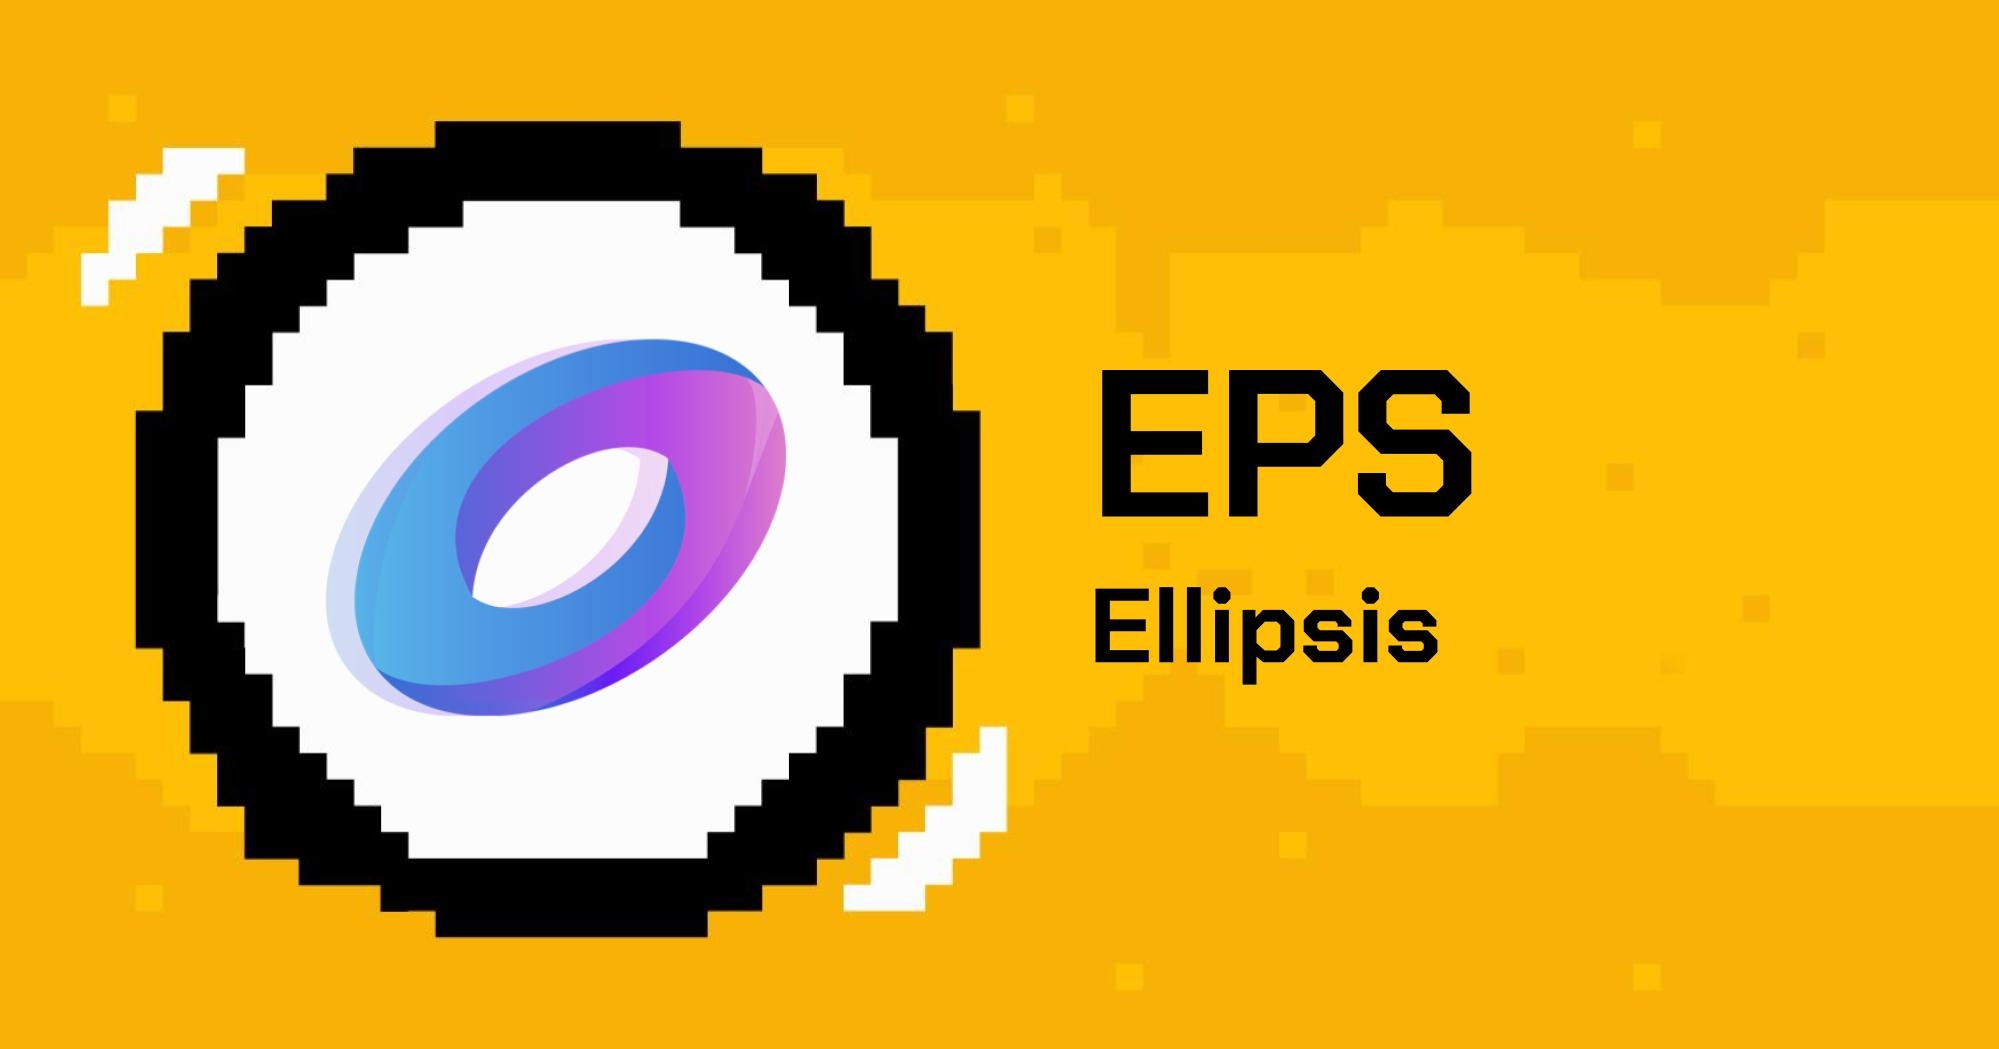 ellipsis là gì